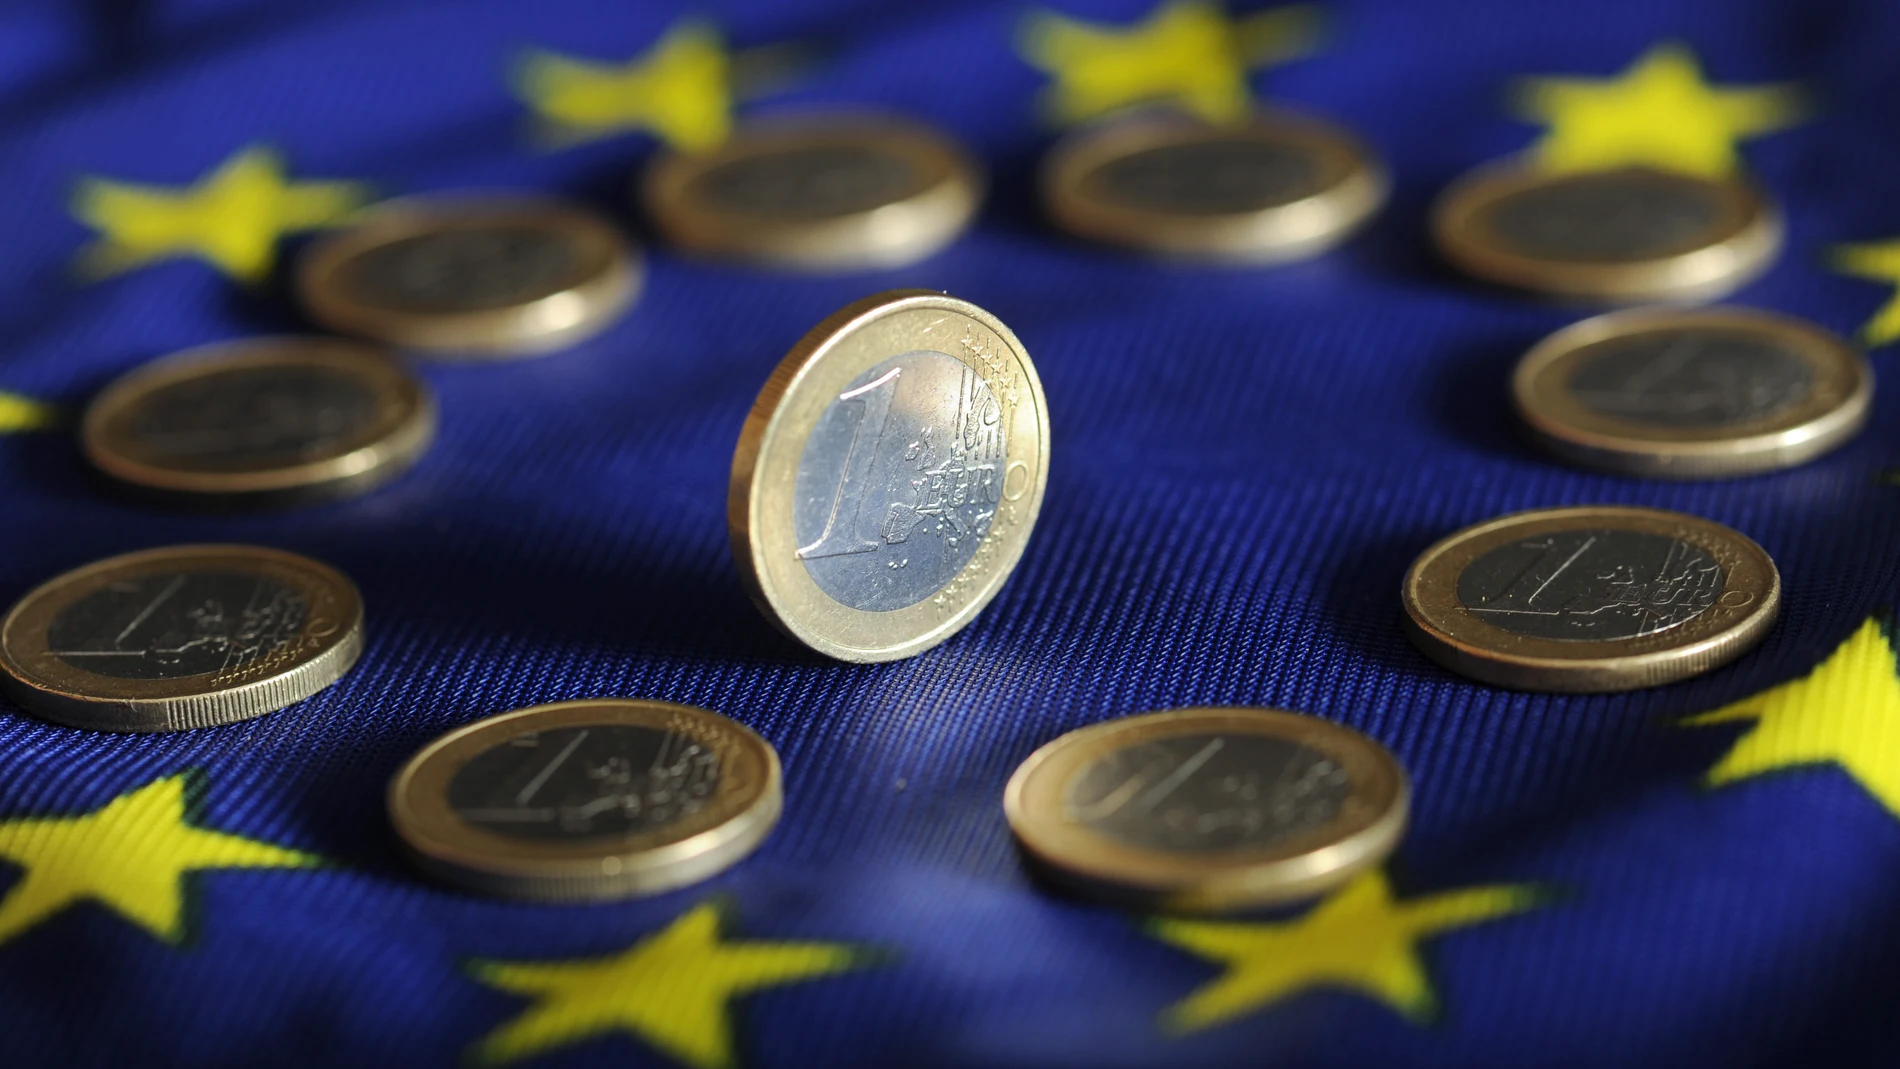 Economía.- El deterioro de la actividad en la eurozona en diciembre hace sonar las alarmas de la recesión, según PMI